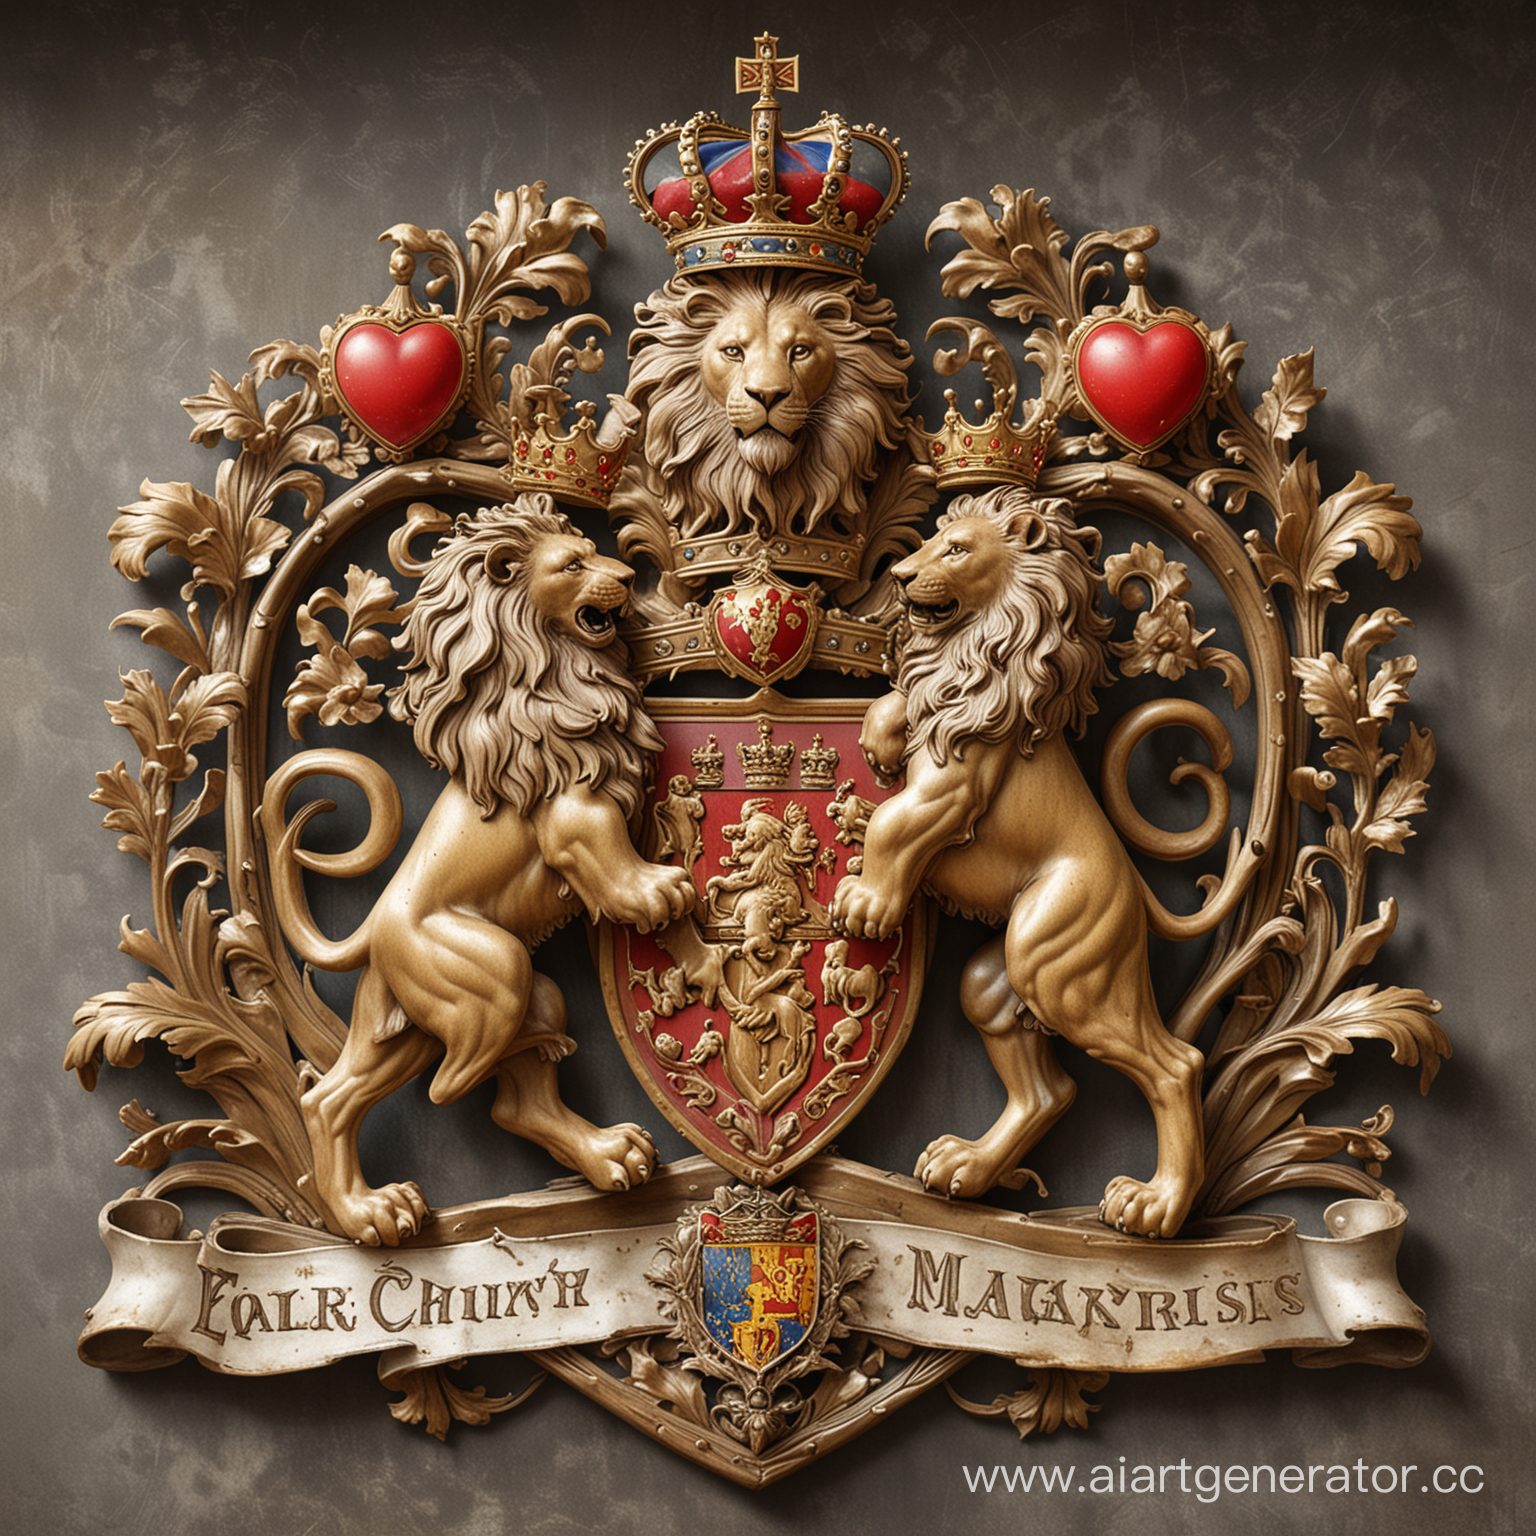 герб

В верхней части герба изображен лев - н стоит на задних лапах,

Под львом на гербе изображена весы

В нижней части герба изображено сердце, окруженное лучами света 
Под всем этим изображен лозунг: "Смелость, Честность, Доброта",
